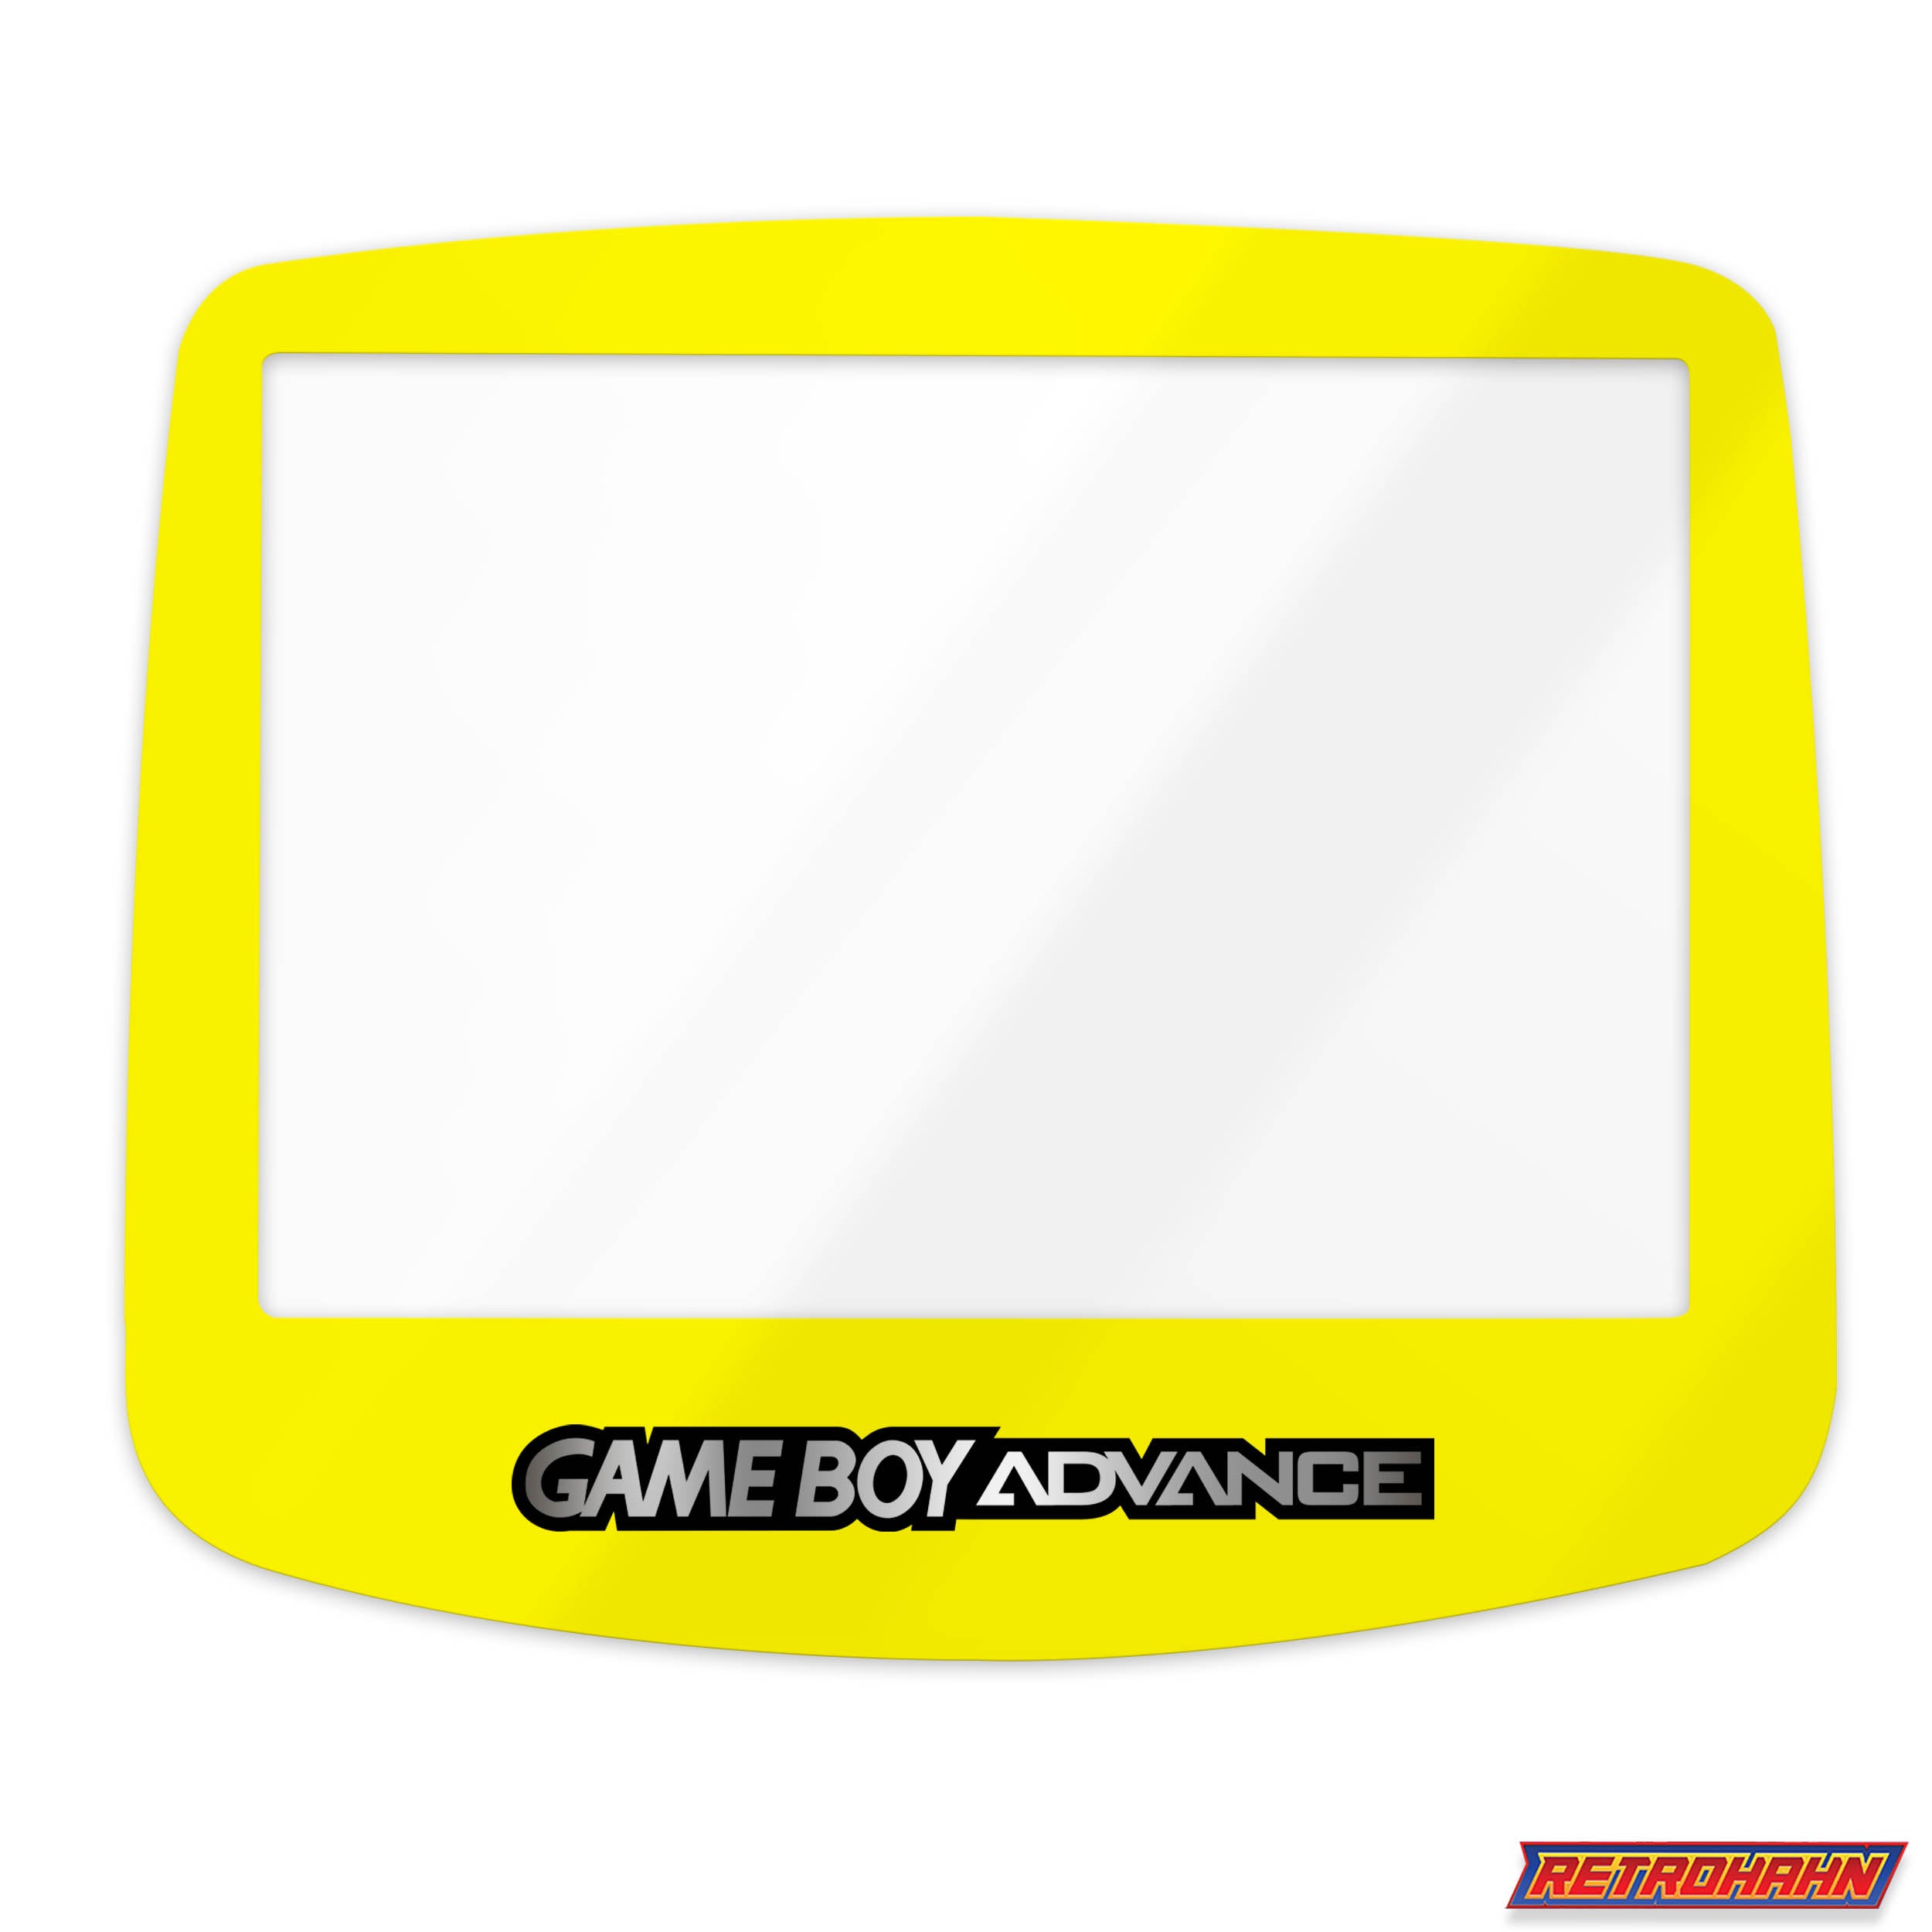 GameBoy Advance: Scheibe